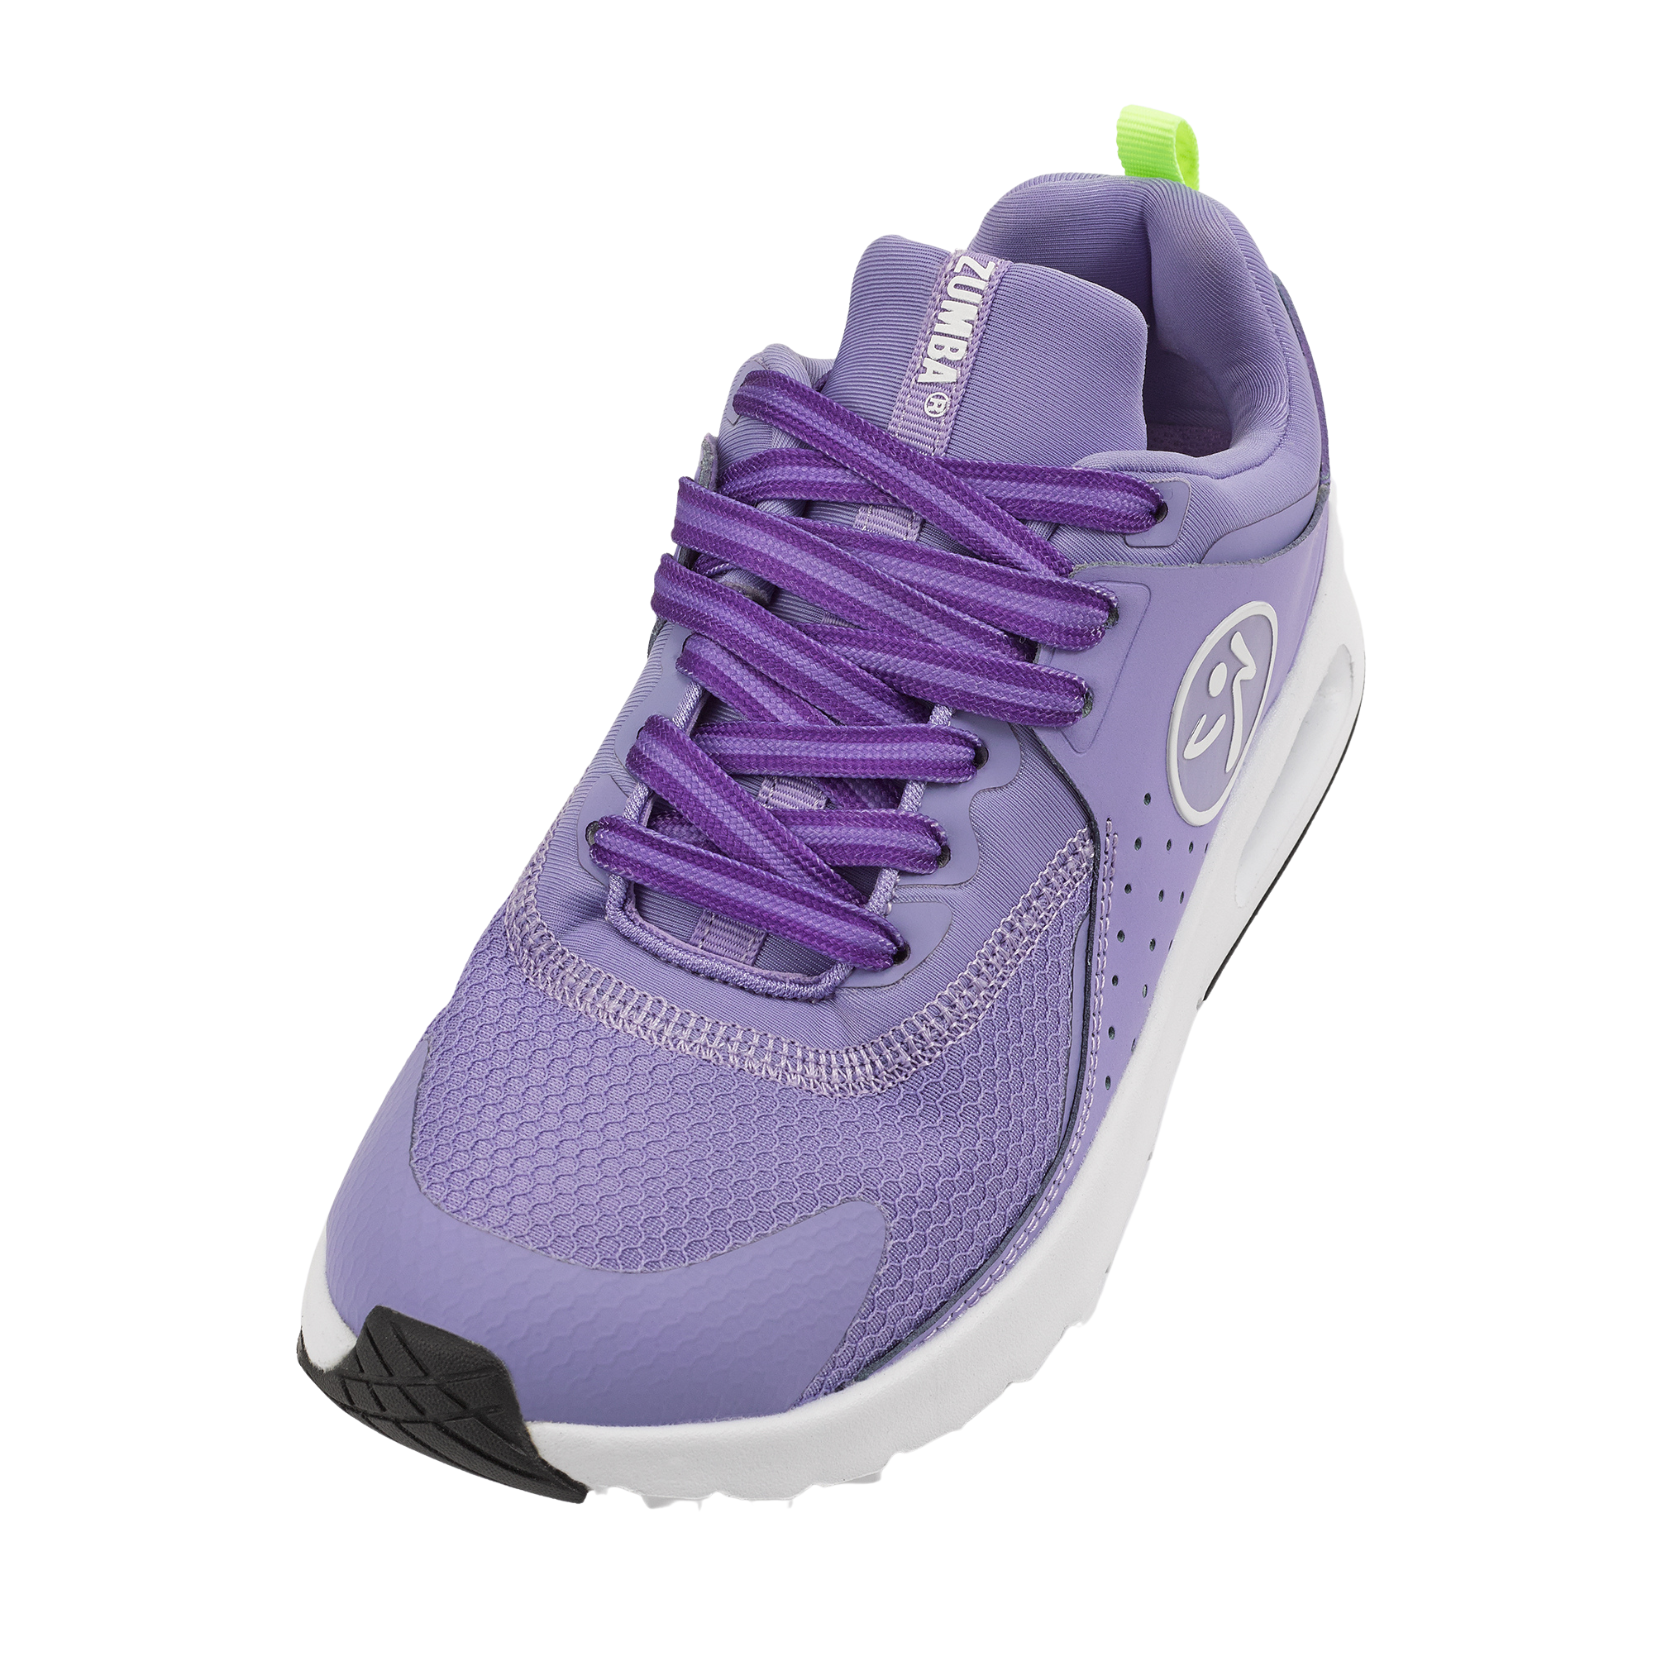 Zumba Shoe Laces - Purple